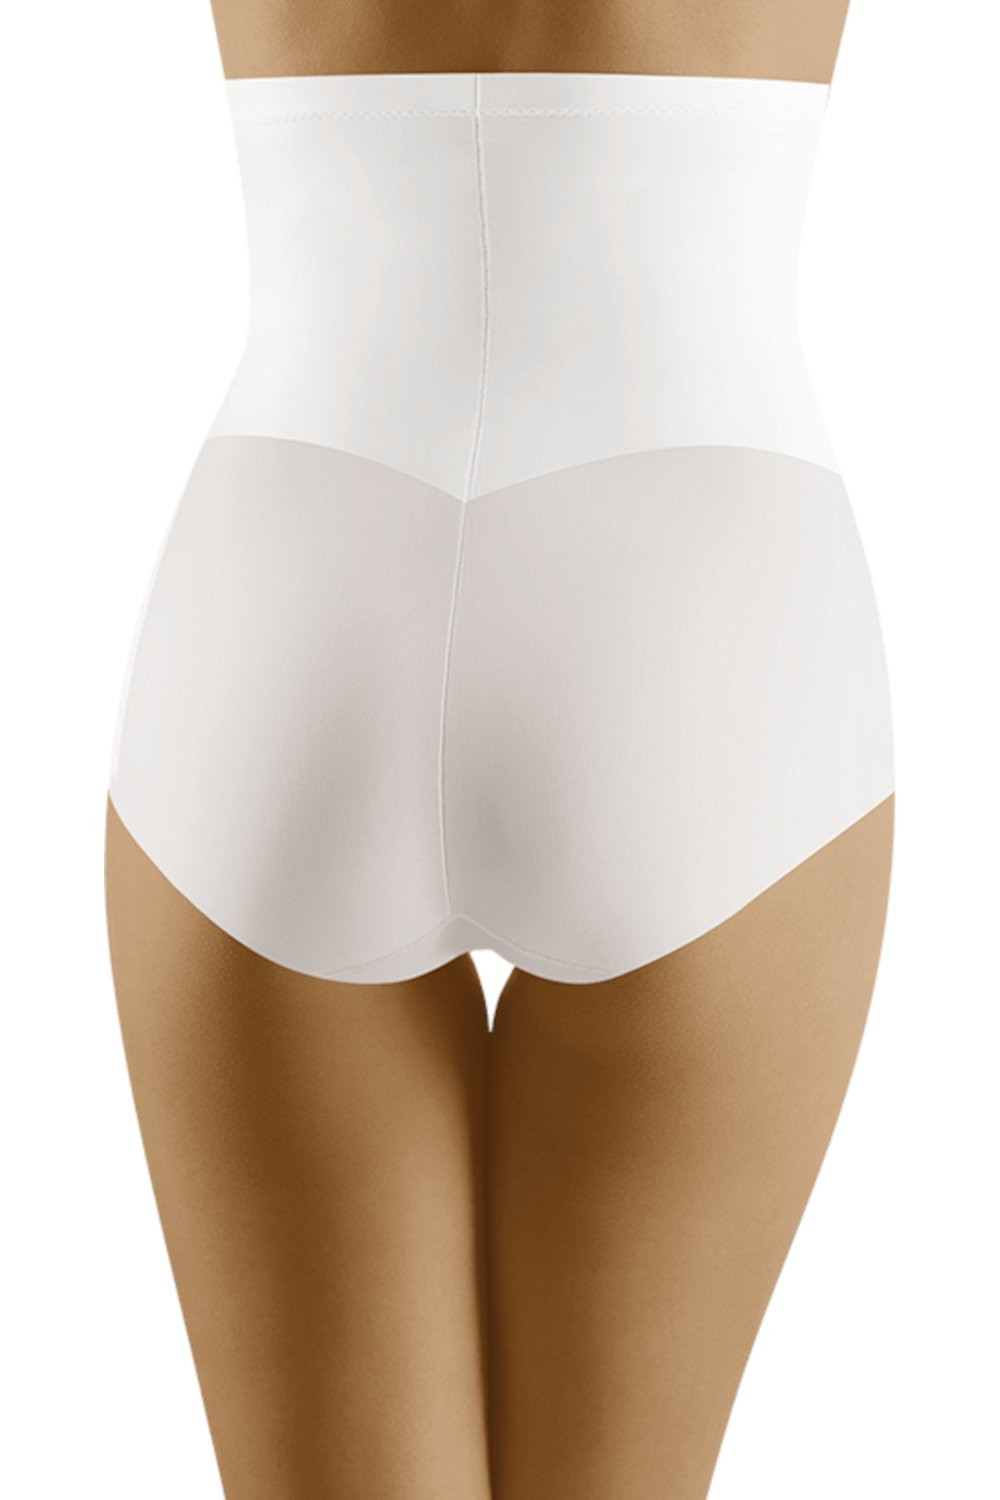 Stahovací kalhotky Modifica white Barva: Bílá, Velikost: L